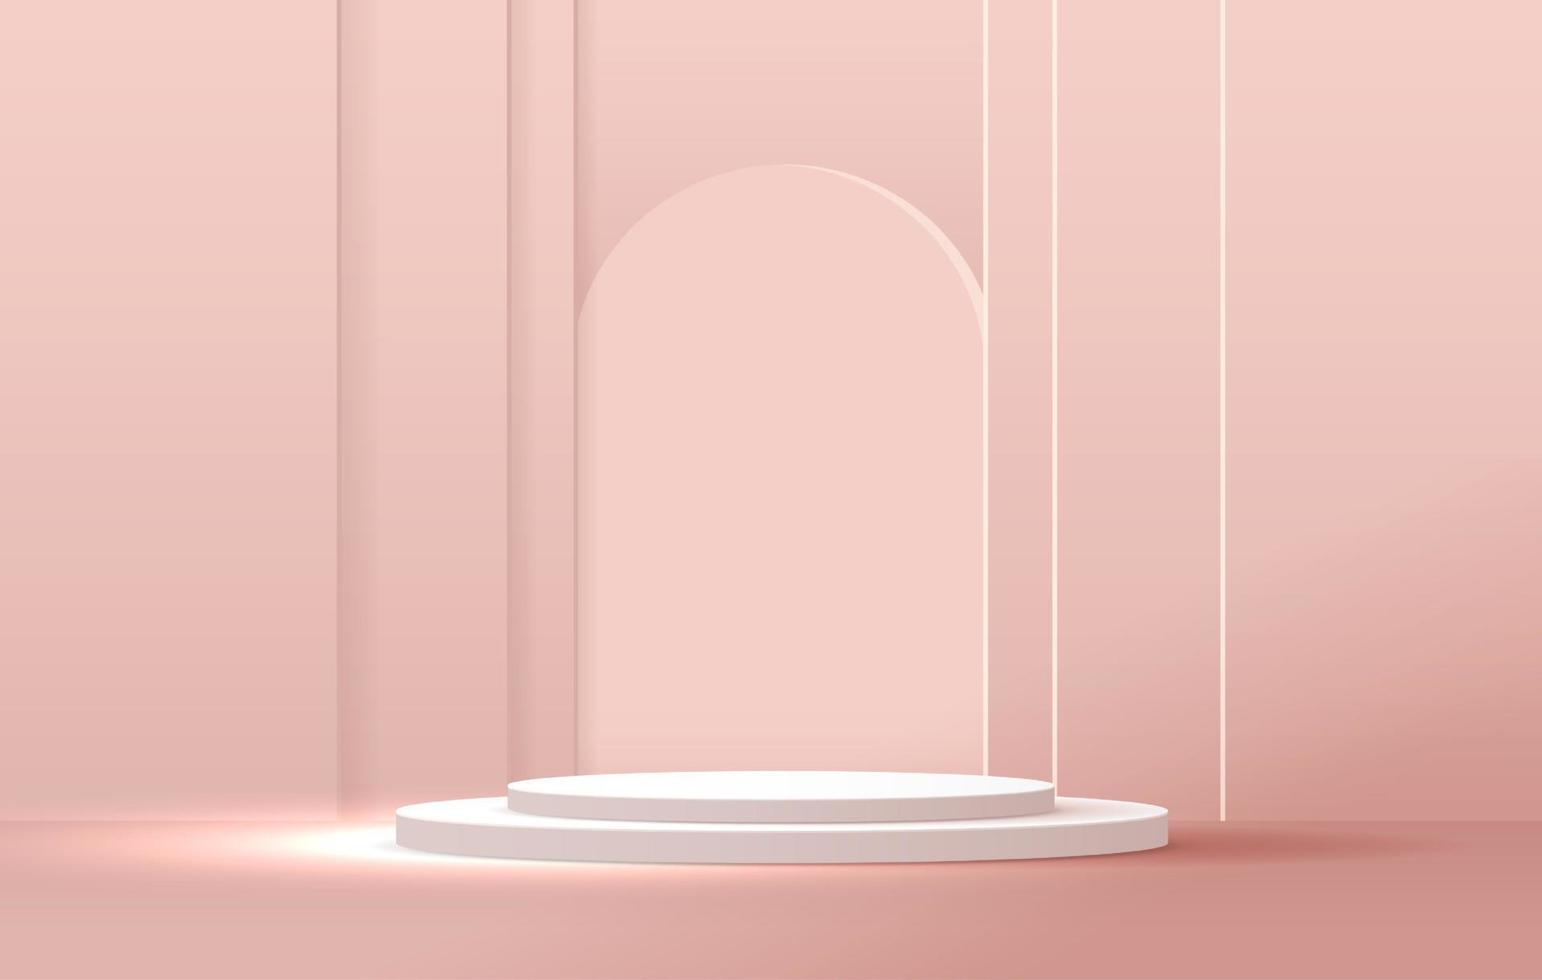 sfondo rosa pastello cosmetico ed espositore premium sul podio per il branding e l'imballaggio della presentazione del prodotto. palco in studio con ombra di sfondo. disegno vettoriale